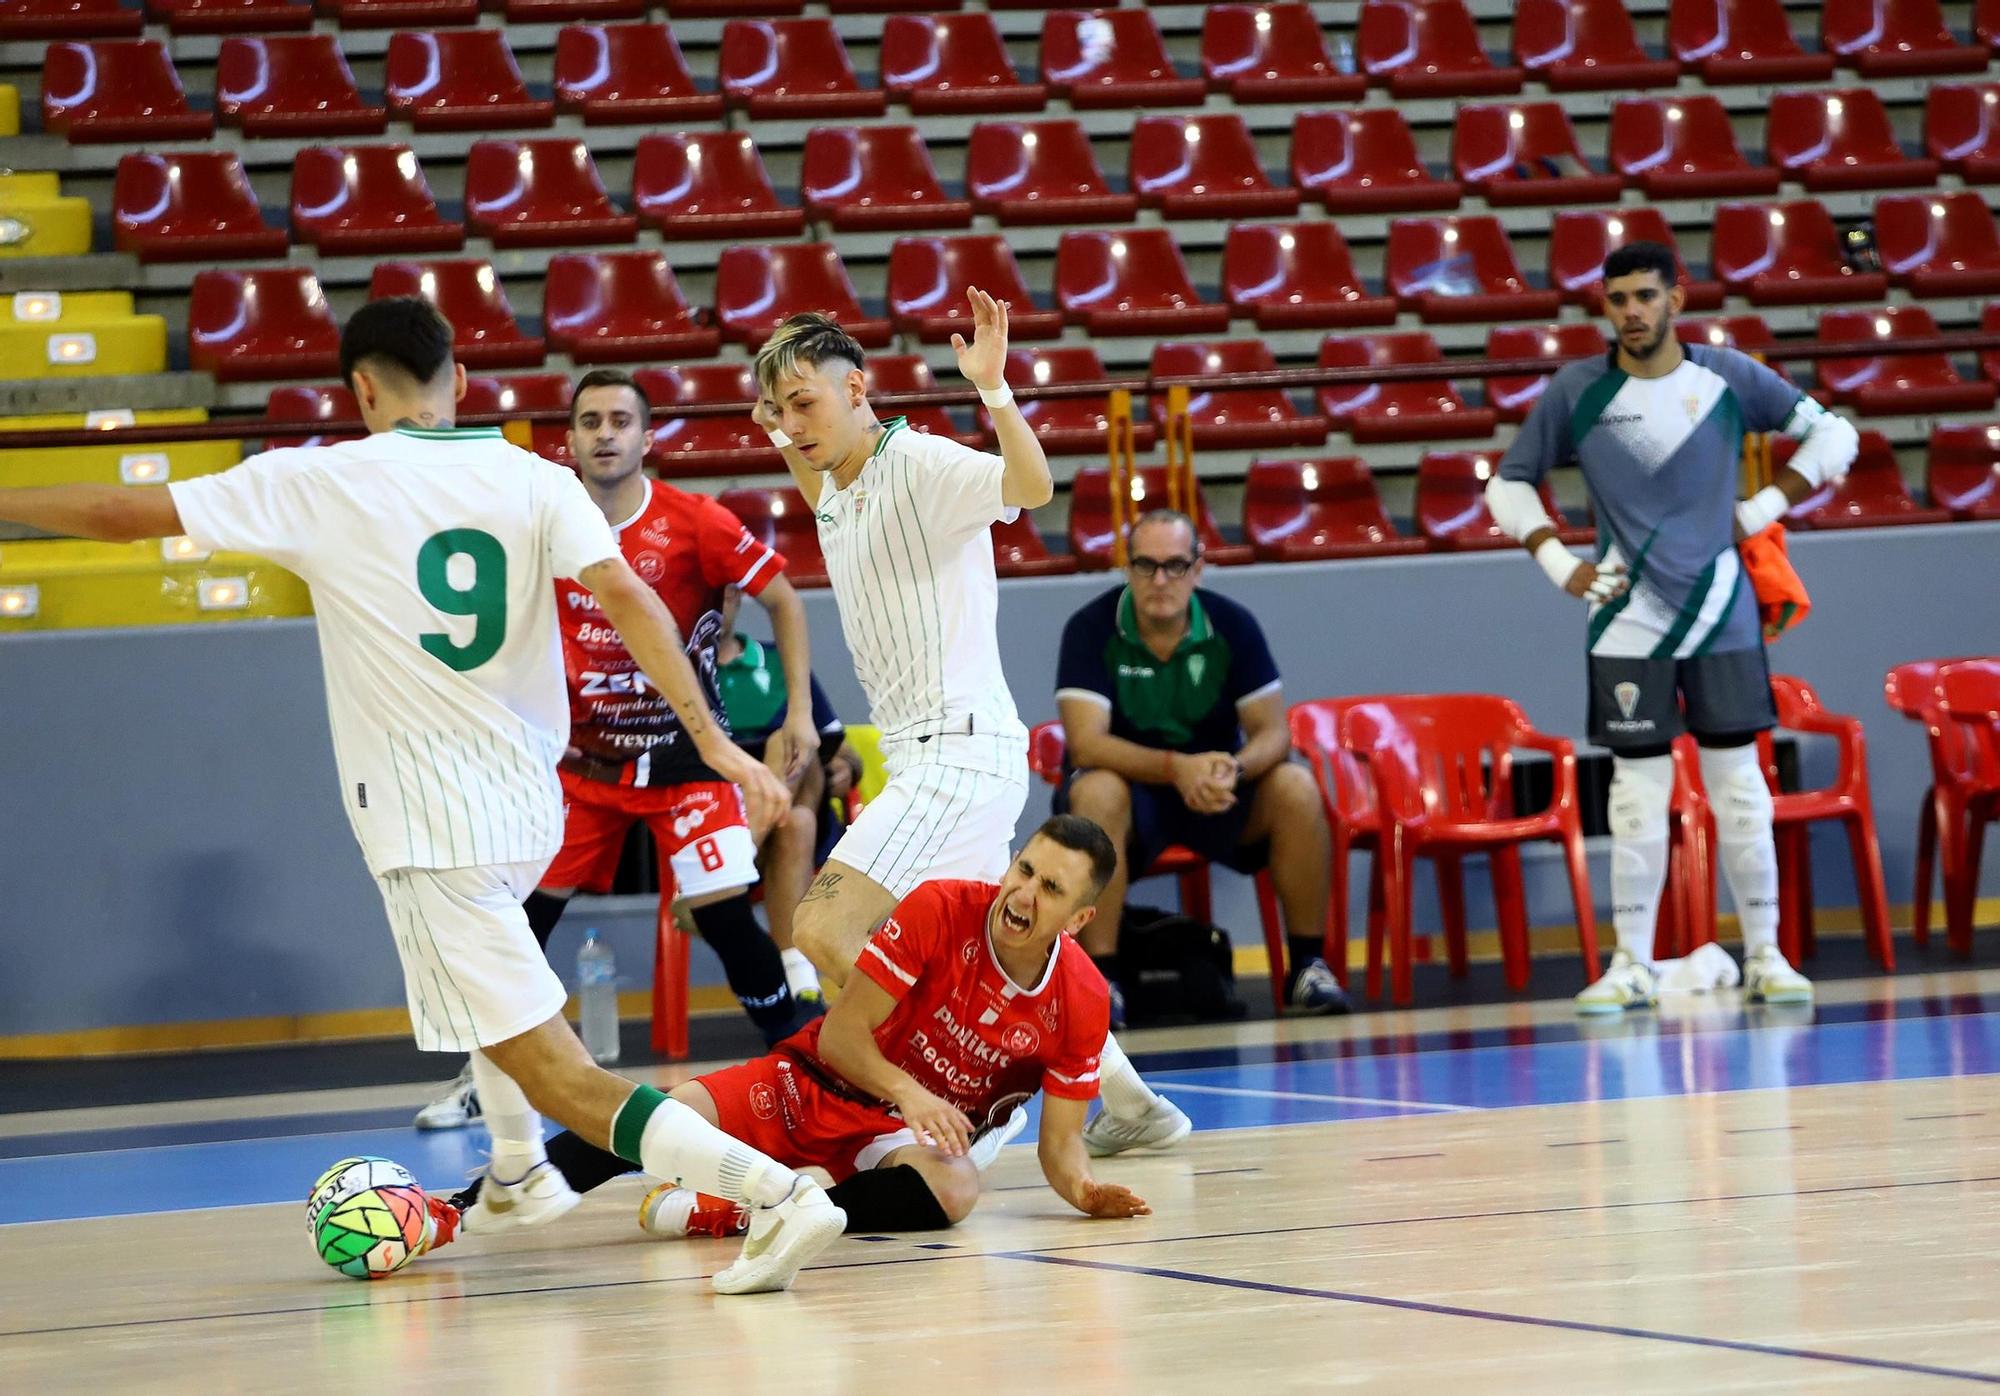 El derbi Córdoba Futsal B - Beconet Bujalance, en imágenes